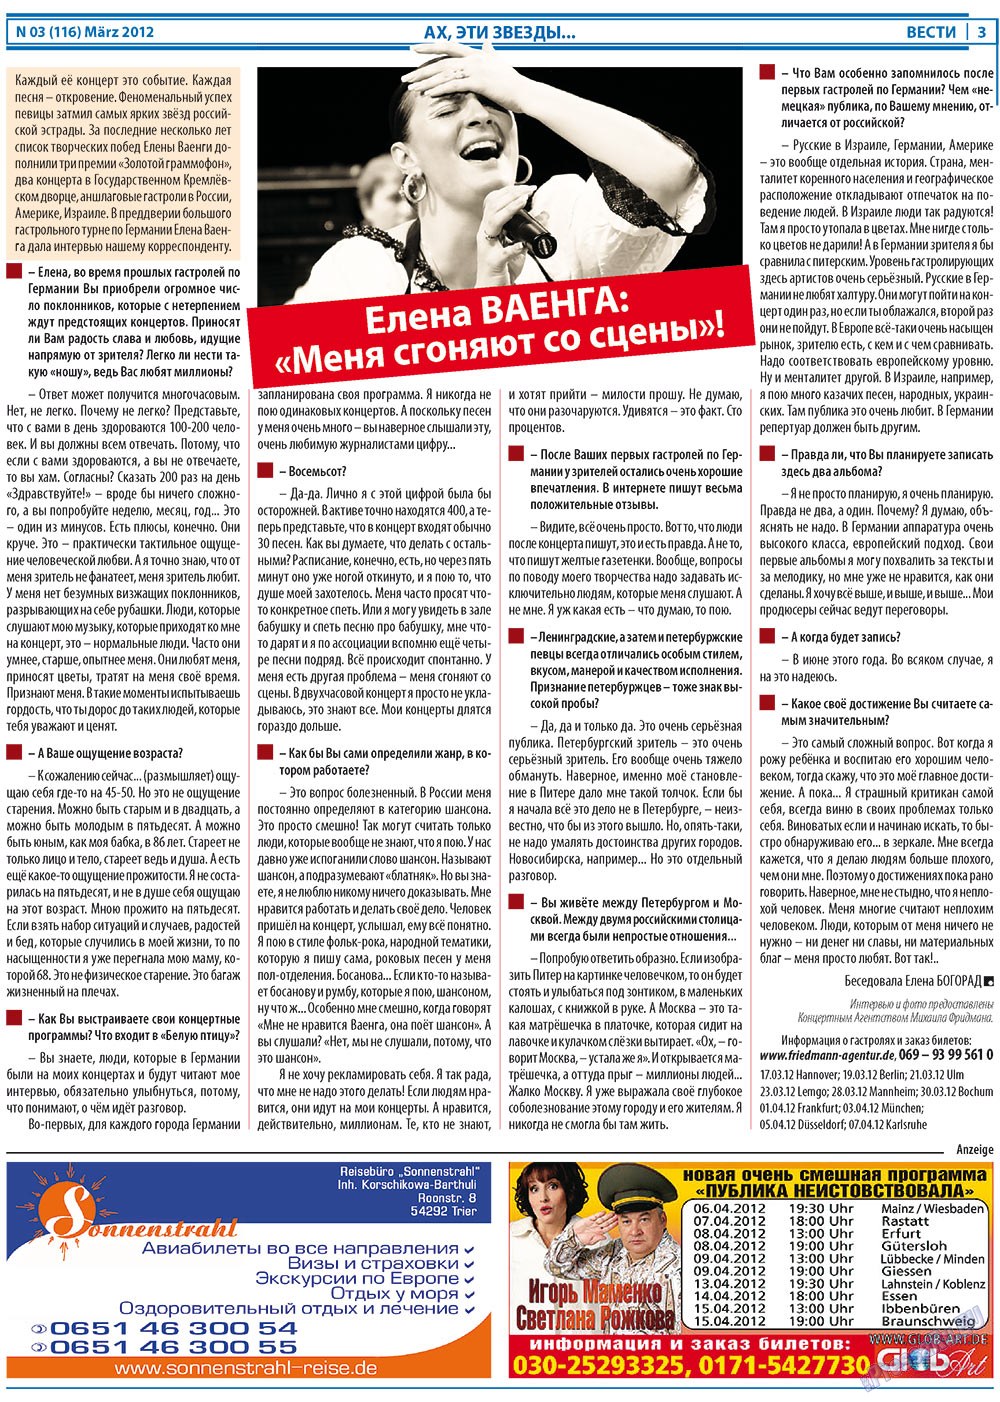 Вести, газета. 2012 №3 стр.3